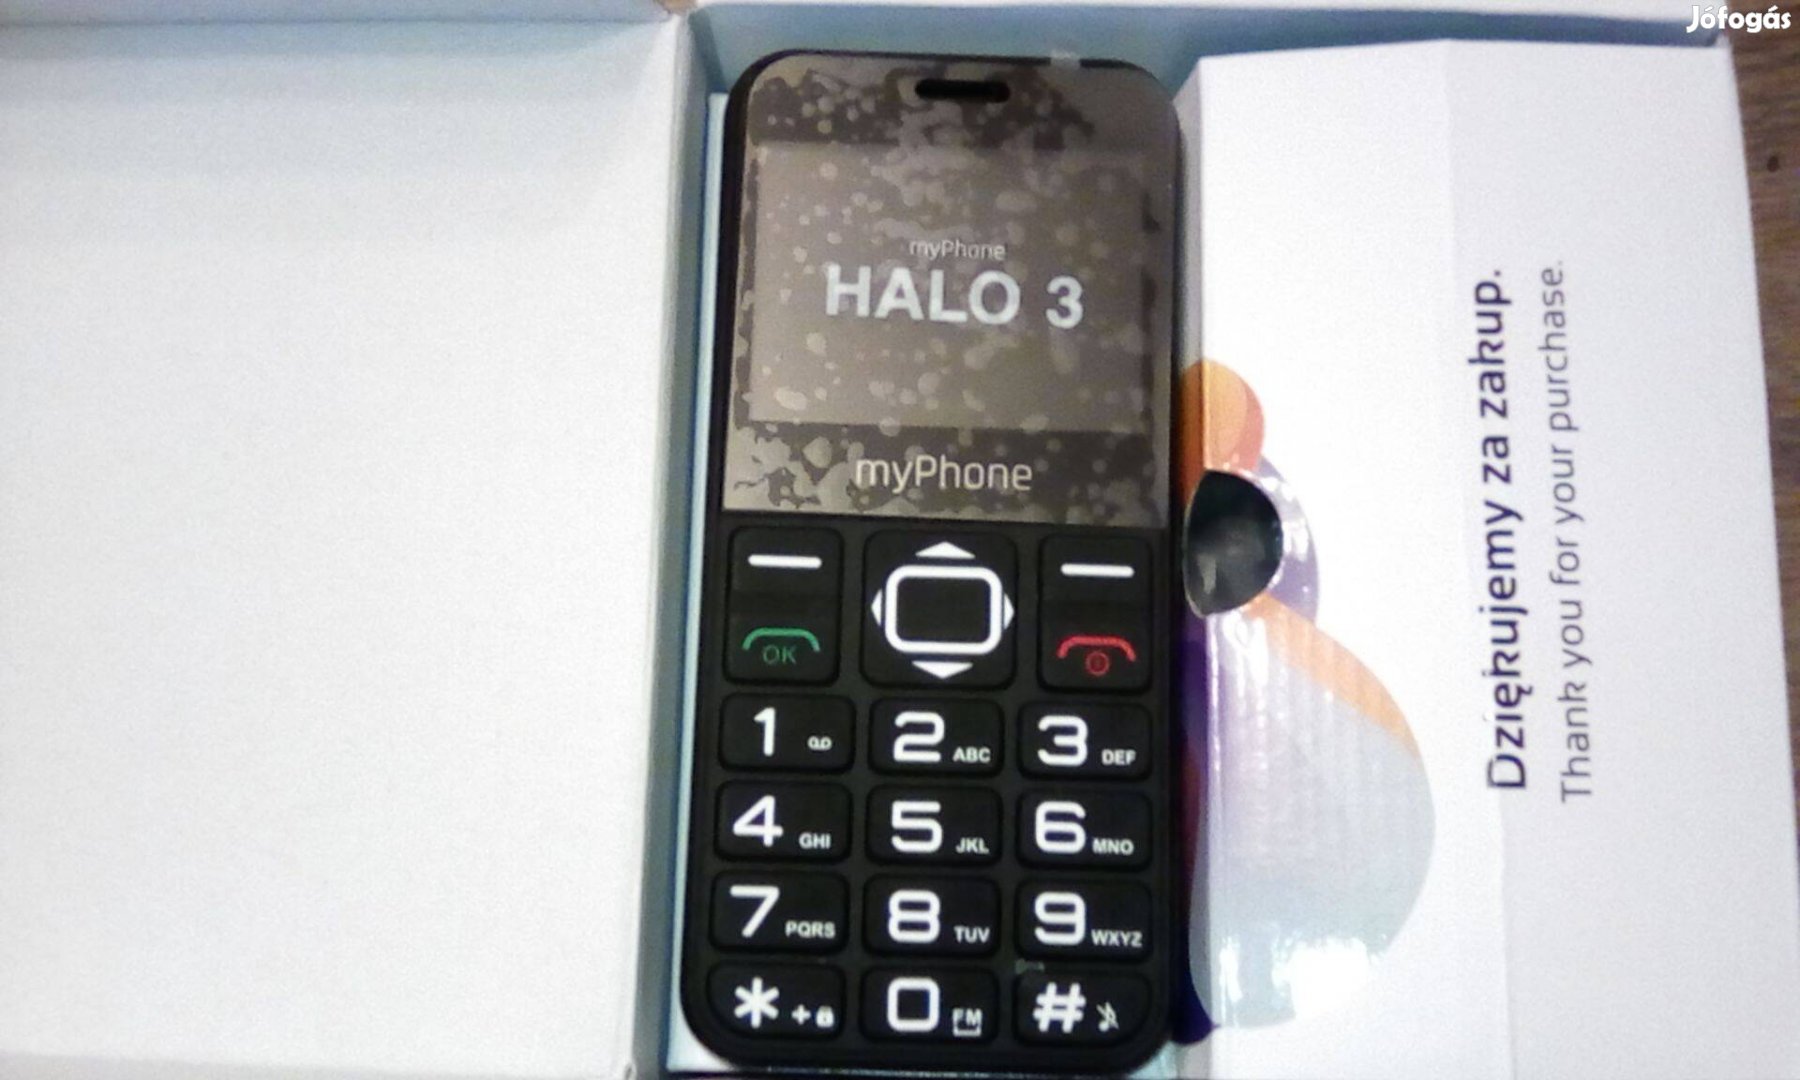 Myphone Halo 3 mobiltelefon nyomó gombos telefon gyári új állapotban